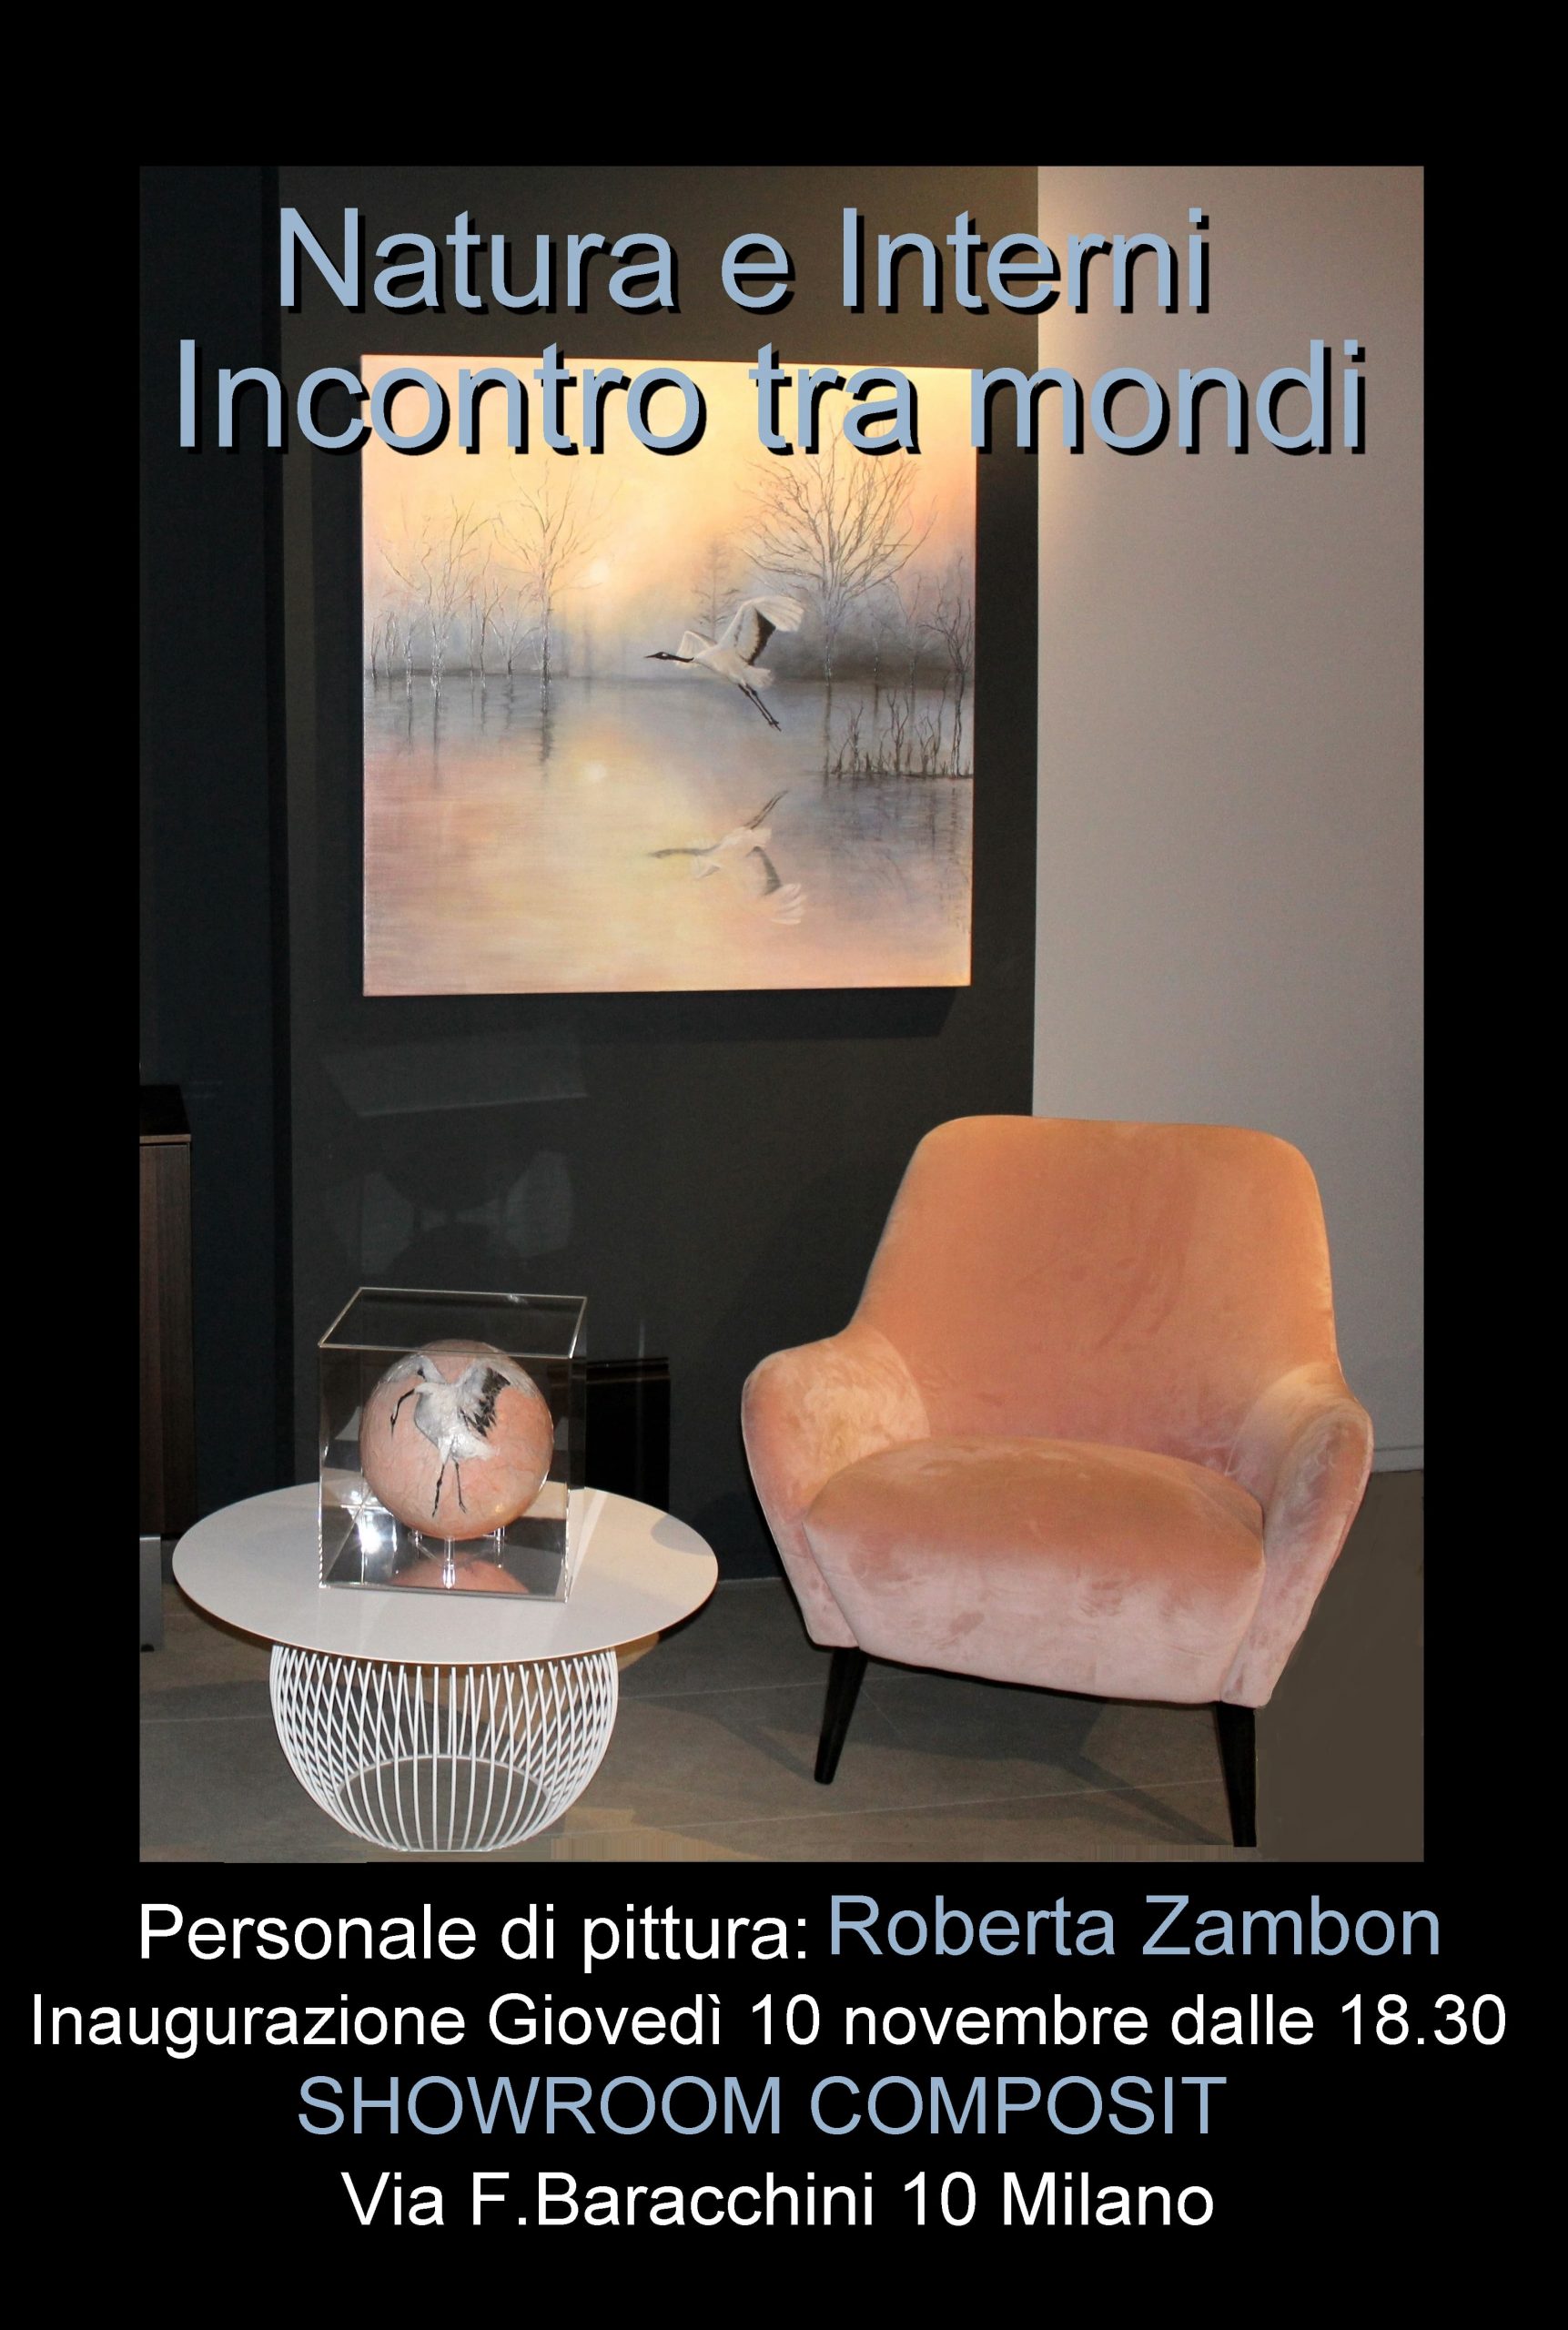 Roberta Zambon,Composit,Milano,interni,interior design,arte,arte contemporanea,mostra  personale